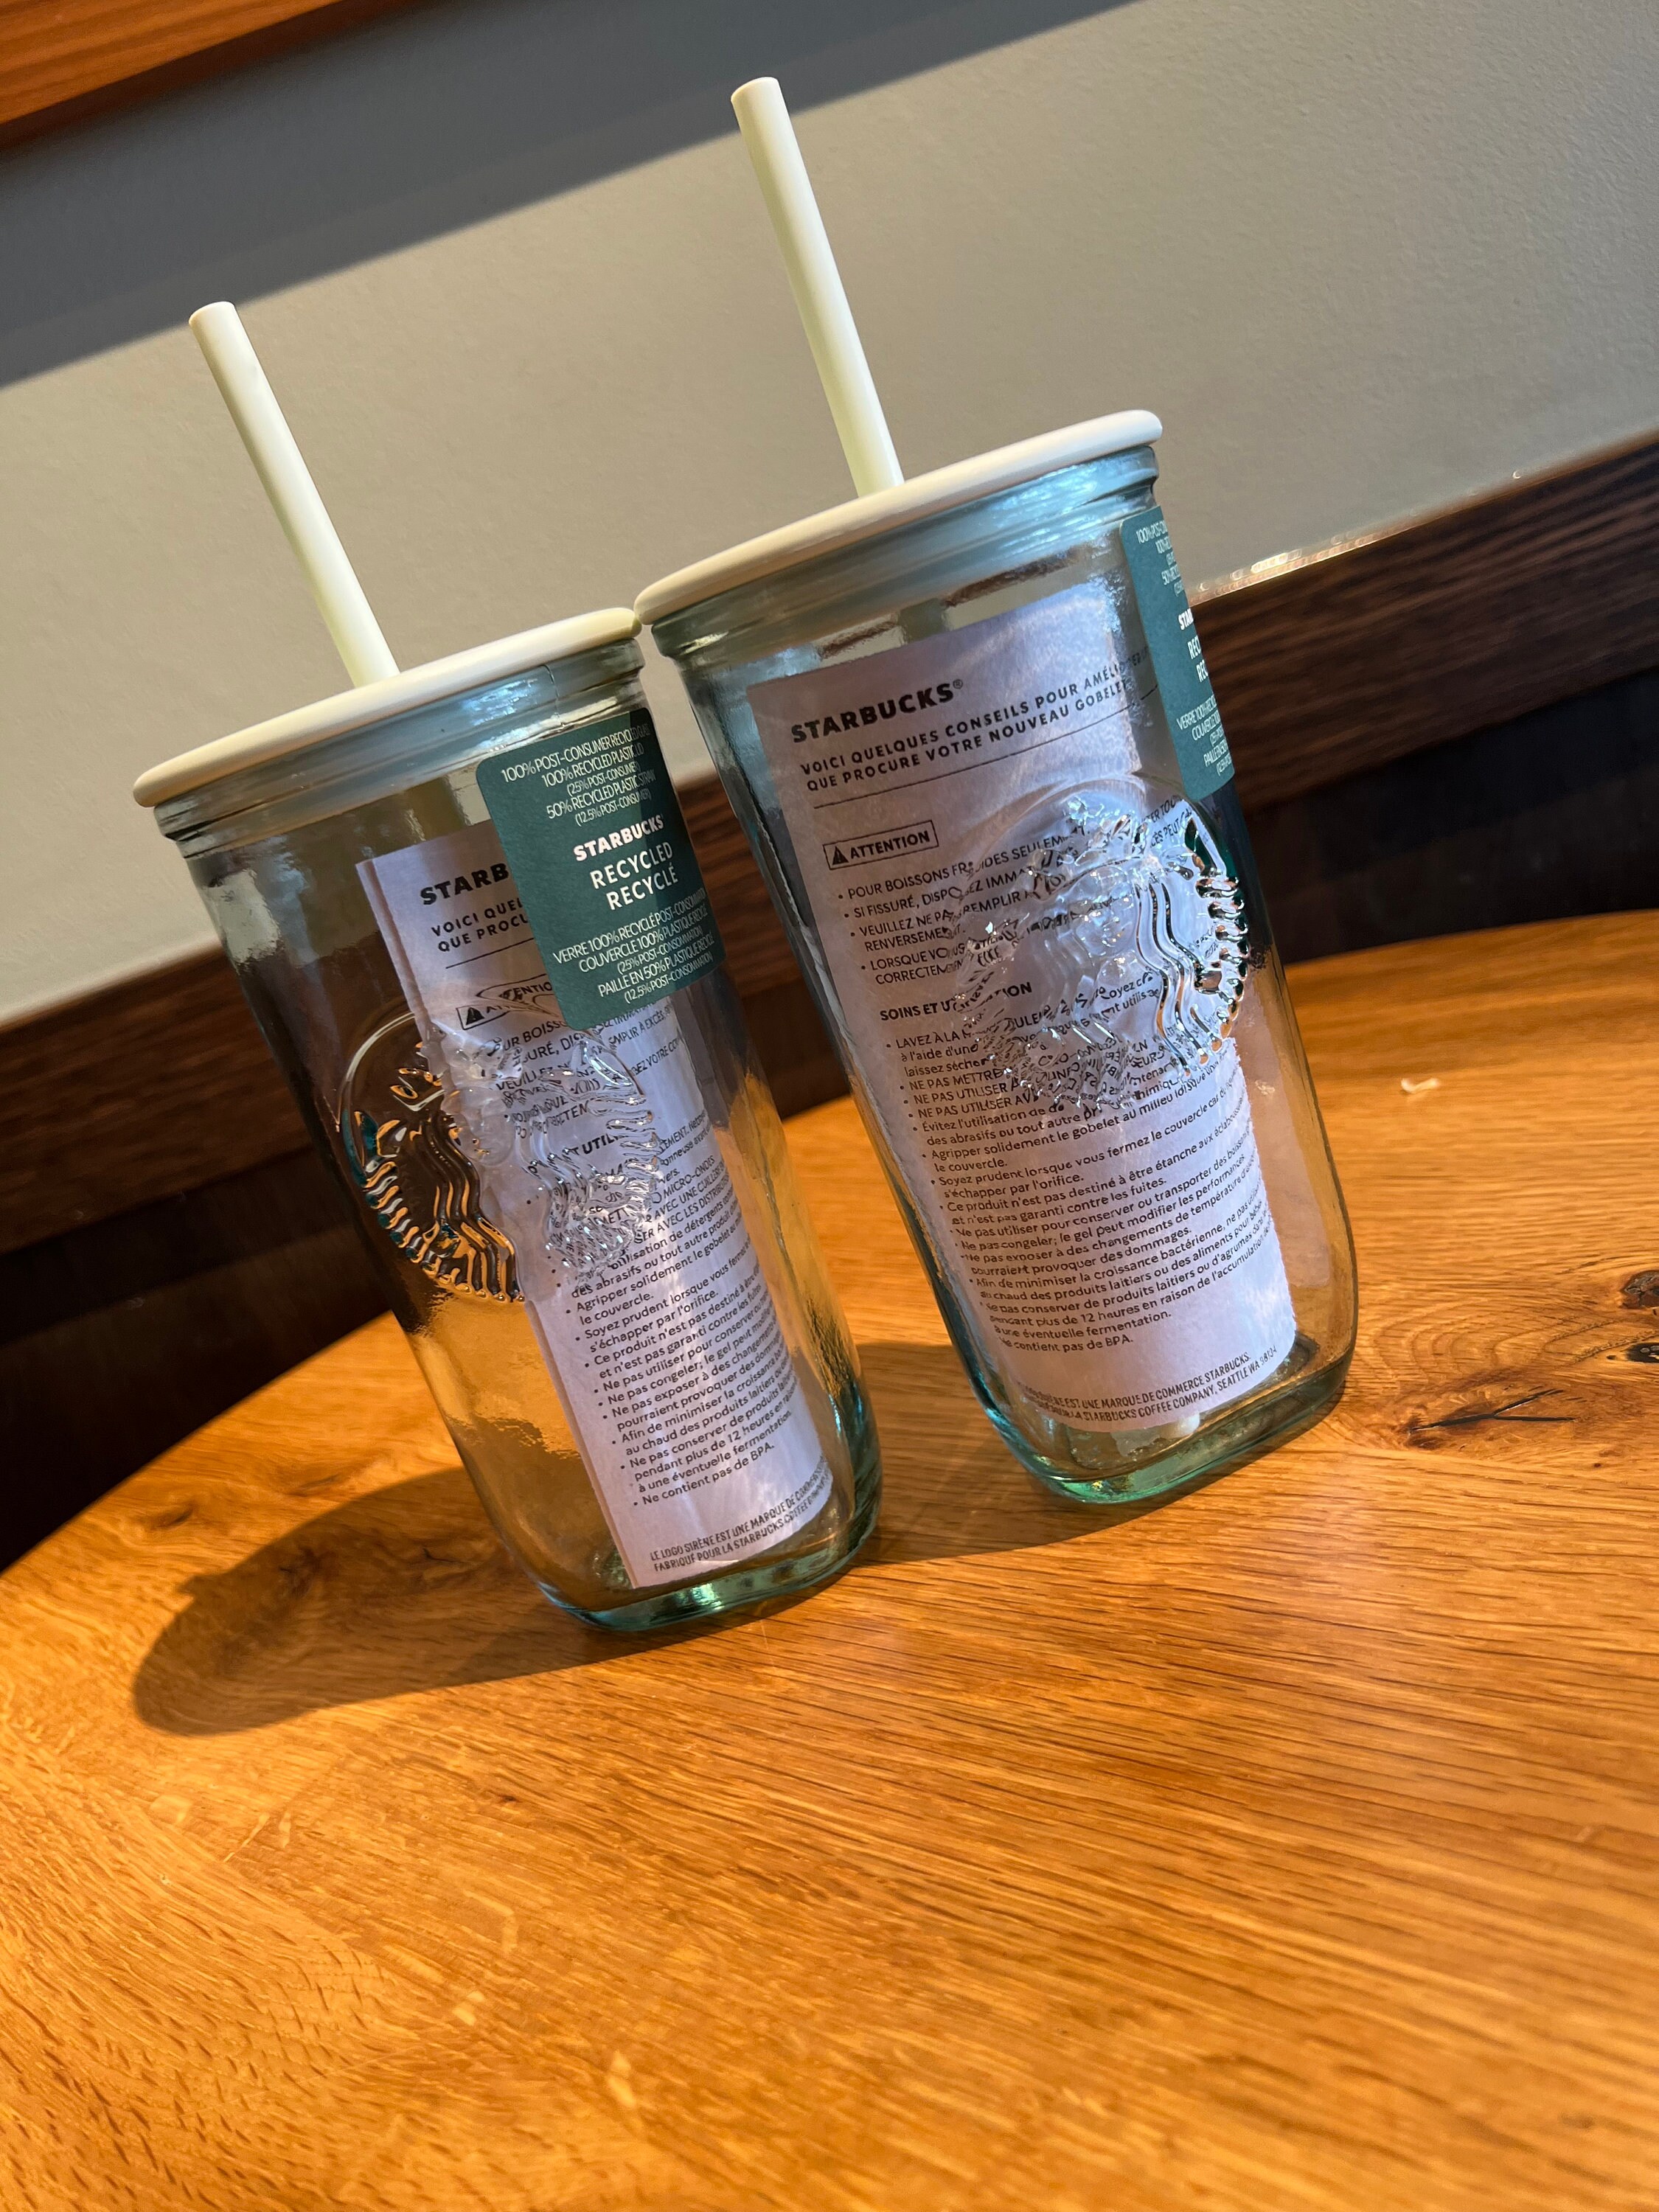 Starbucks, Other, Starbucks Recycled Glass Green Tumbler